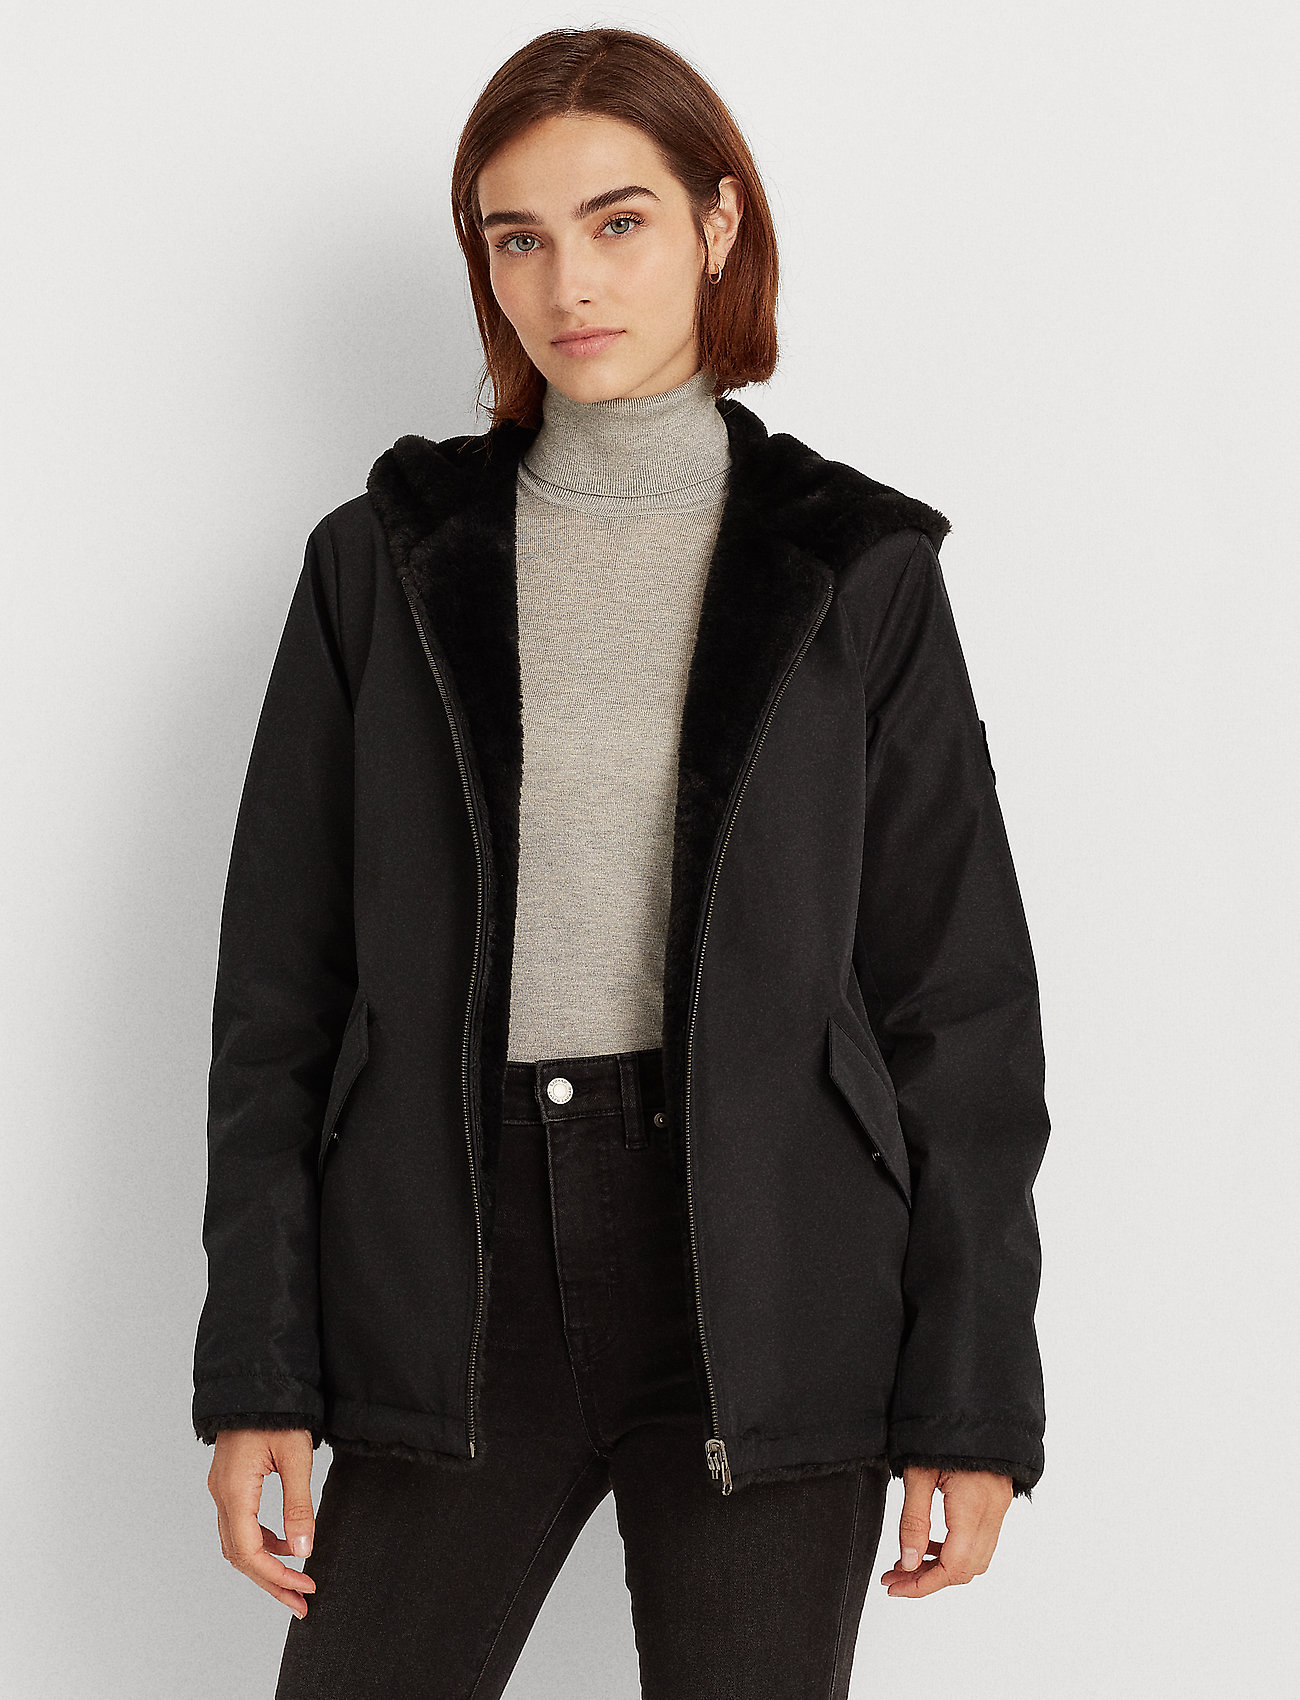 Reversible Faux-fur Coat (Black) (2995 kr) - Lauren Ralph Lauren